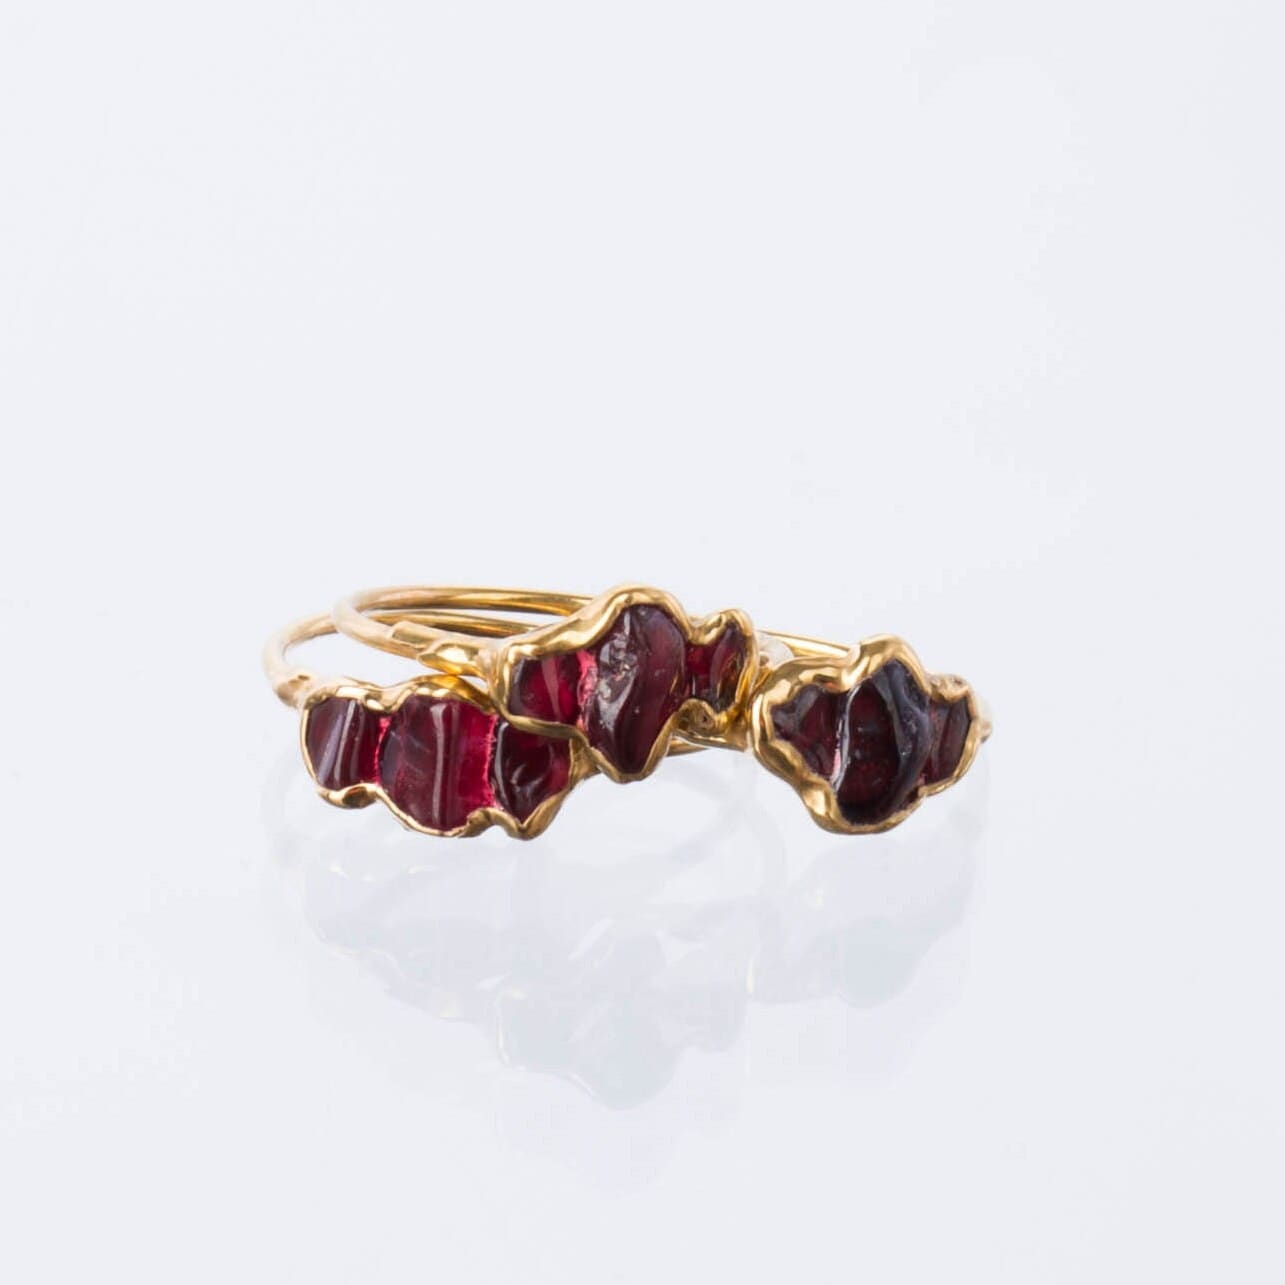 Triple Raw Garnet Ring Gold Gemstone Jewelry Rough Crystal